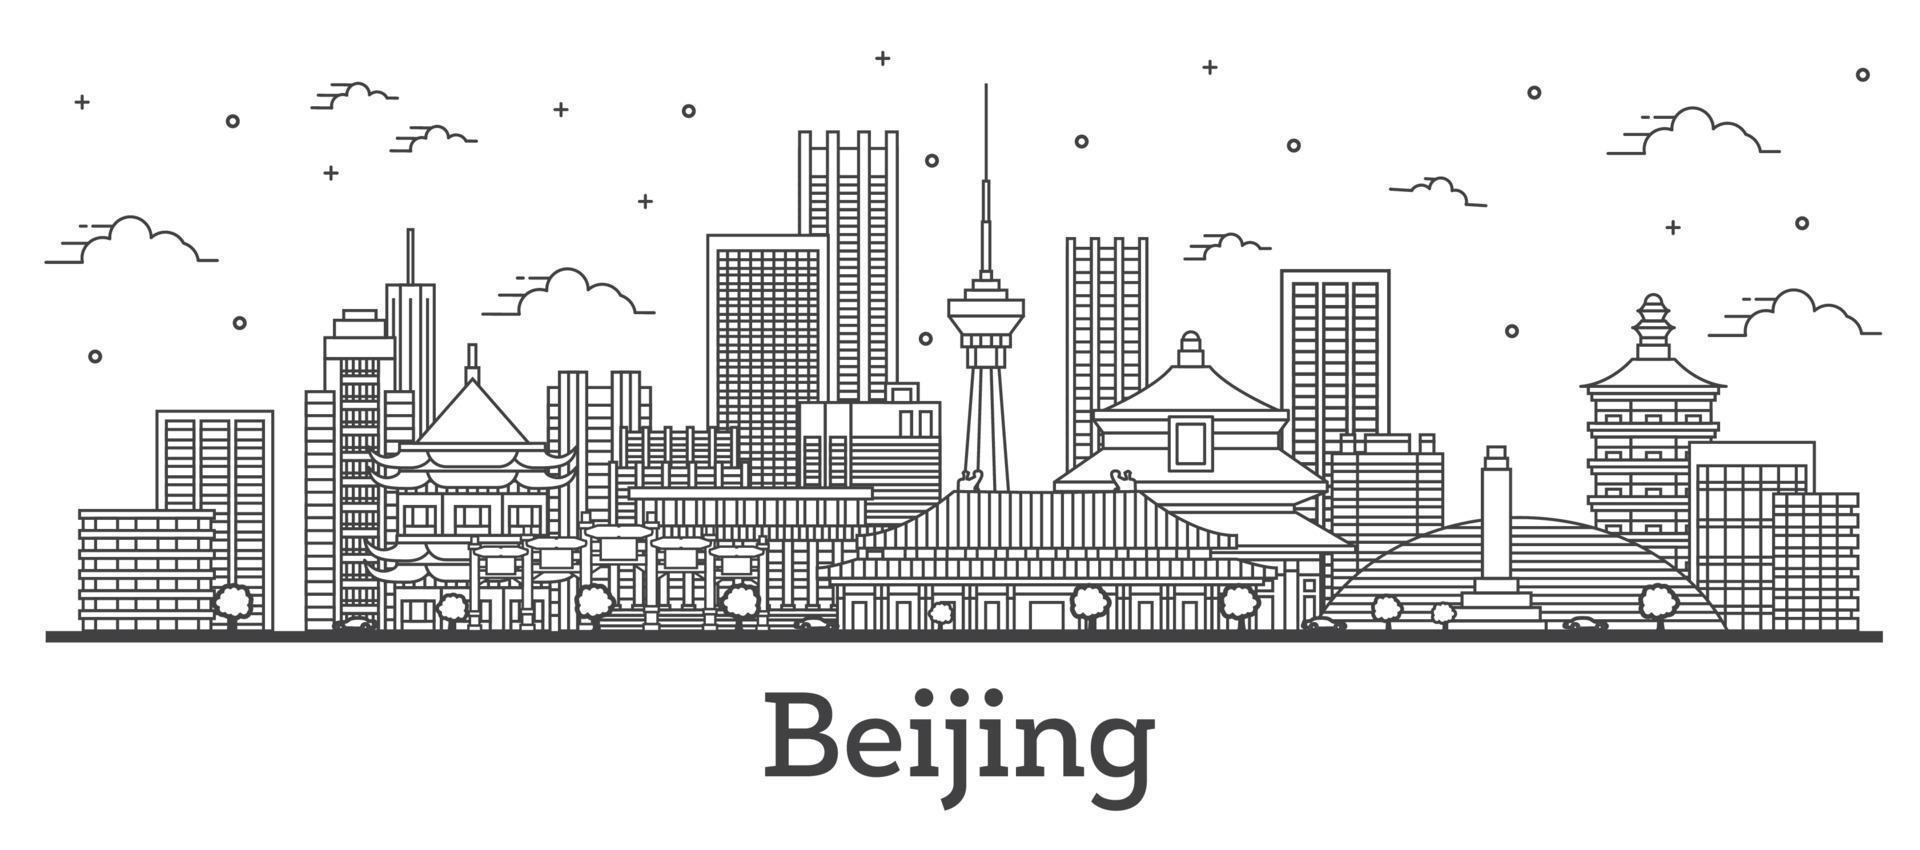 delineie o horizonte da cidade de Pequim na China com edifícios modernos isolados em branco. vetor